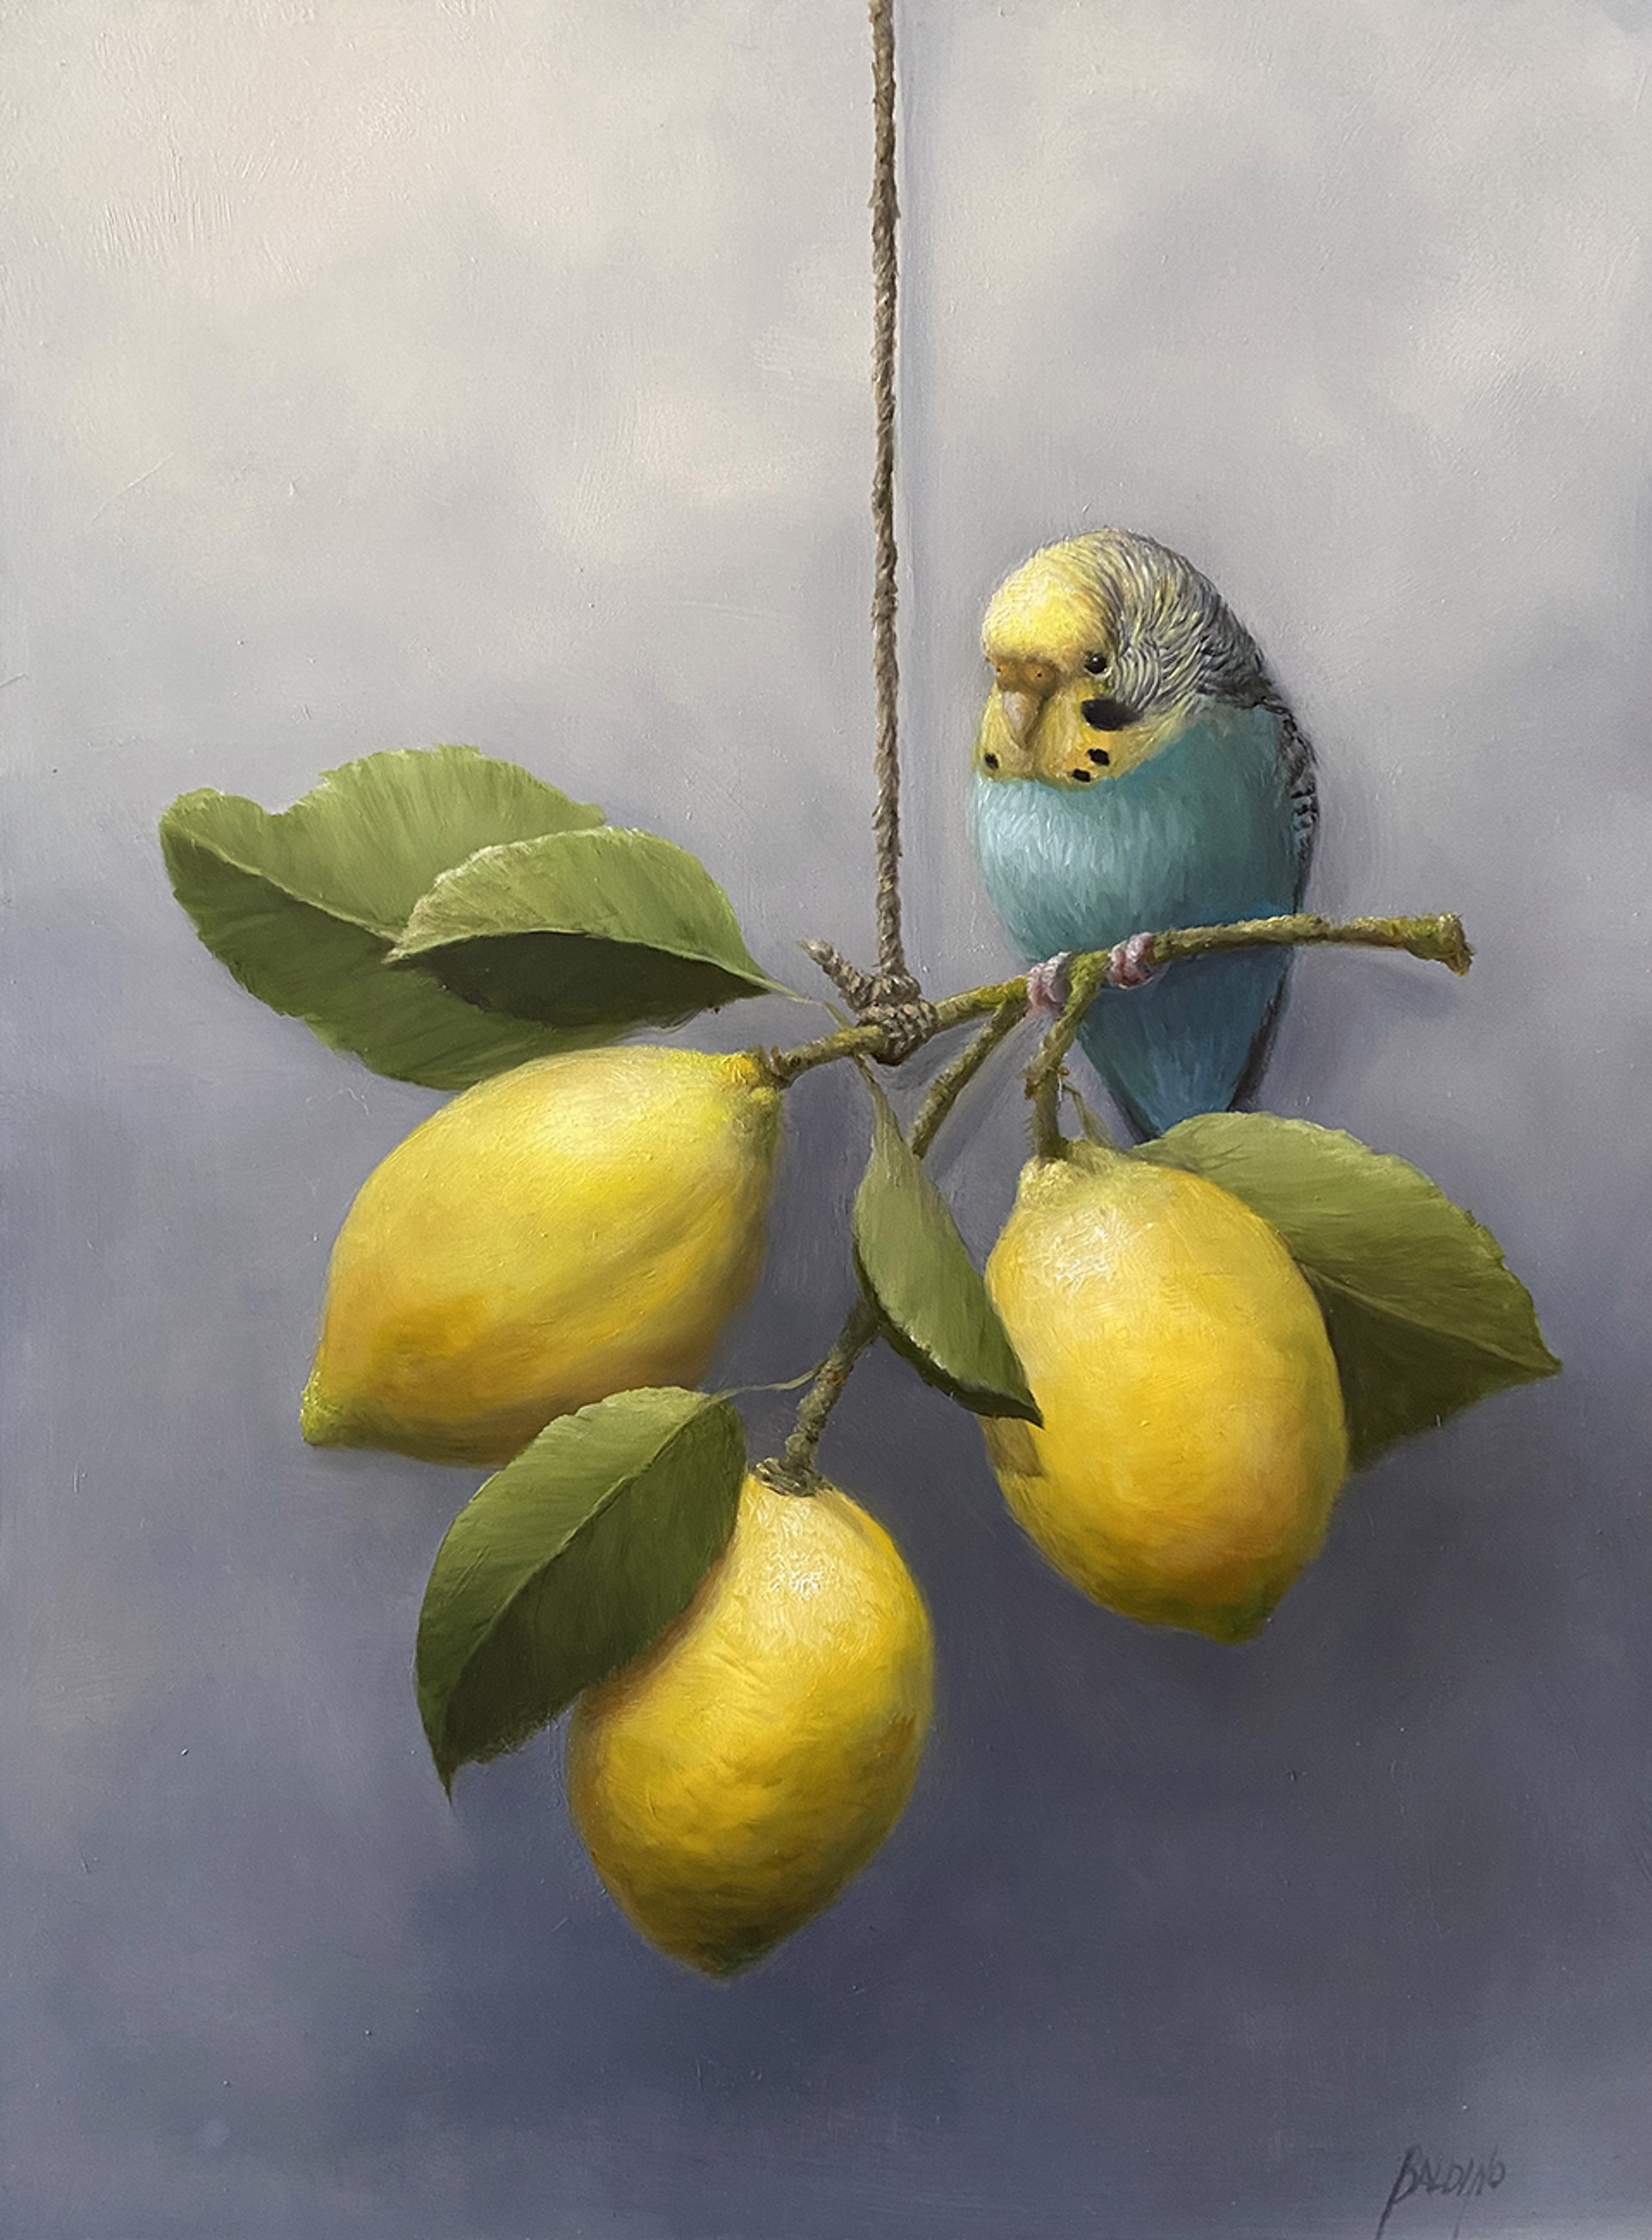 Budgie with Lemons by Patt Baldino